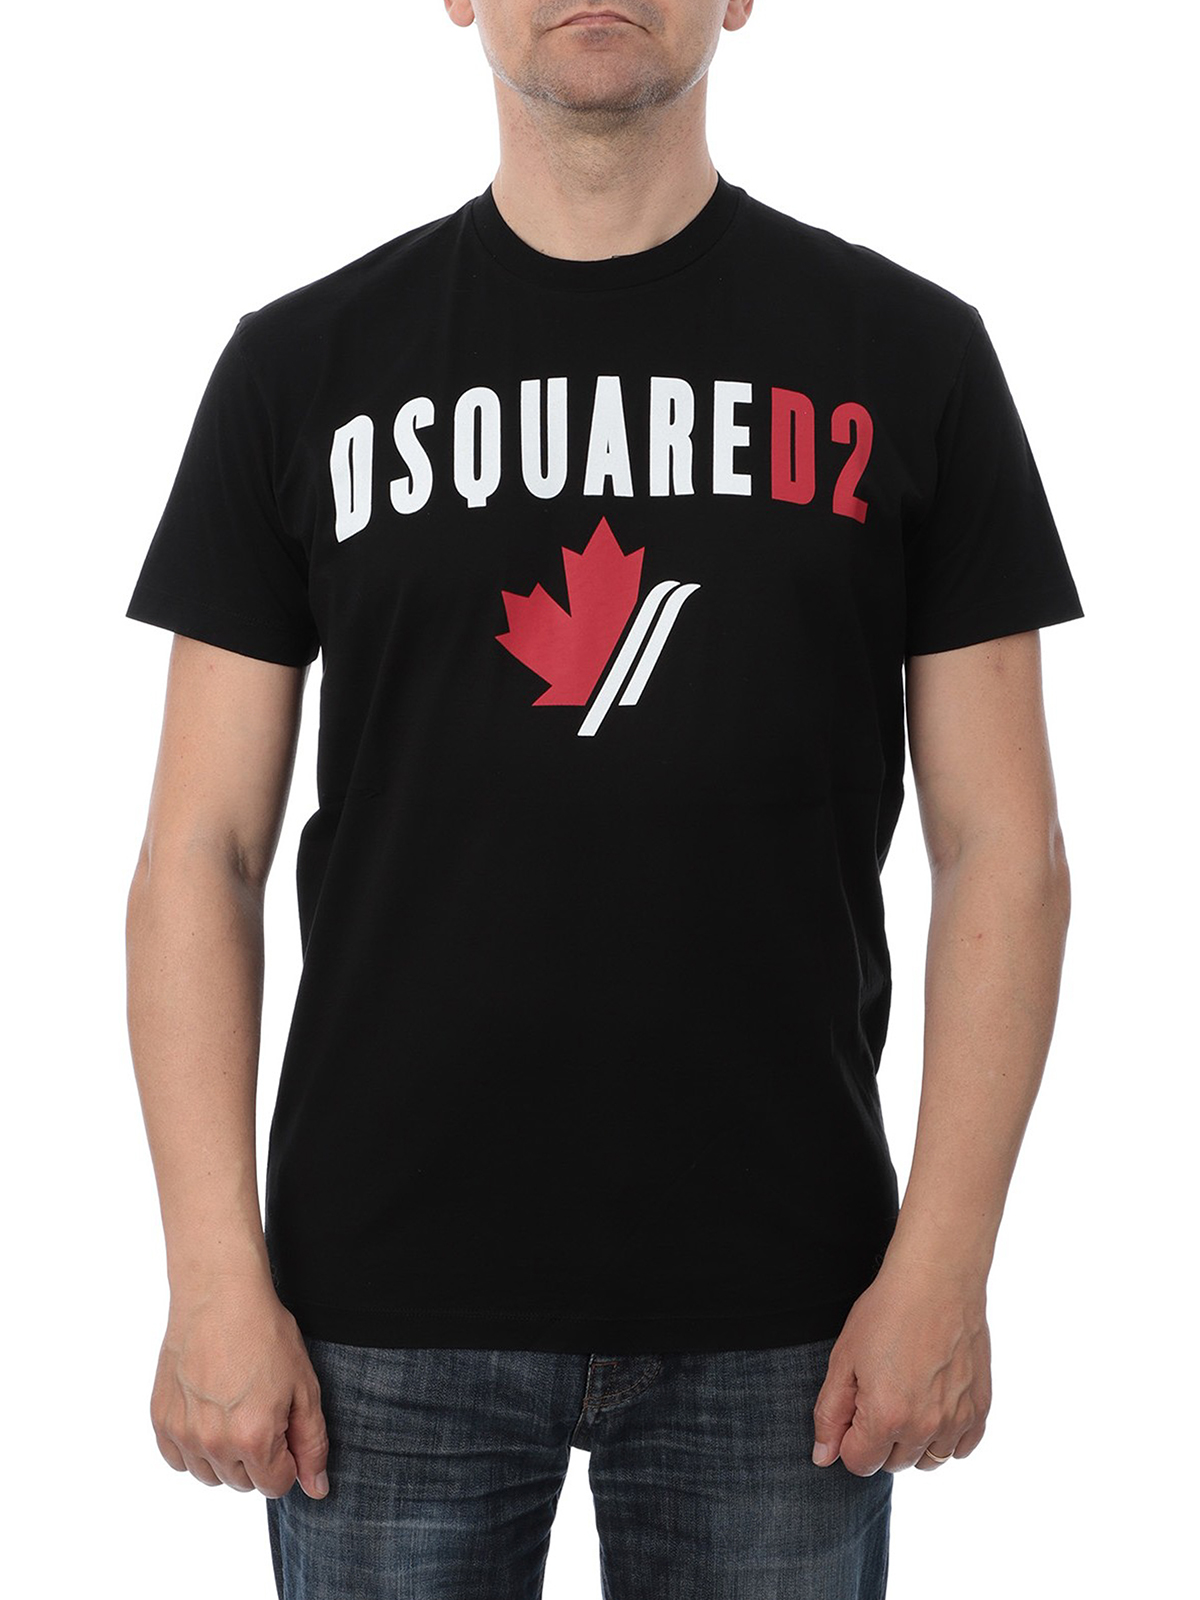 dsquared2 leaf logo t shirt